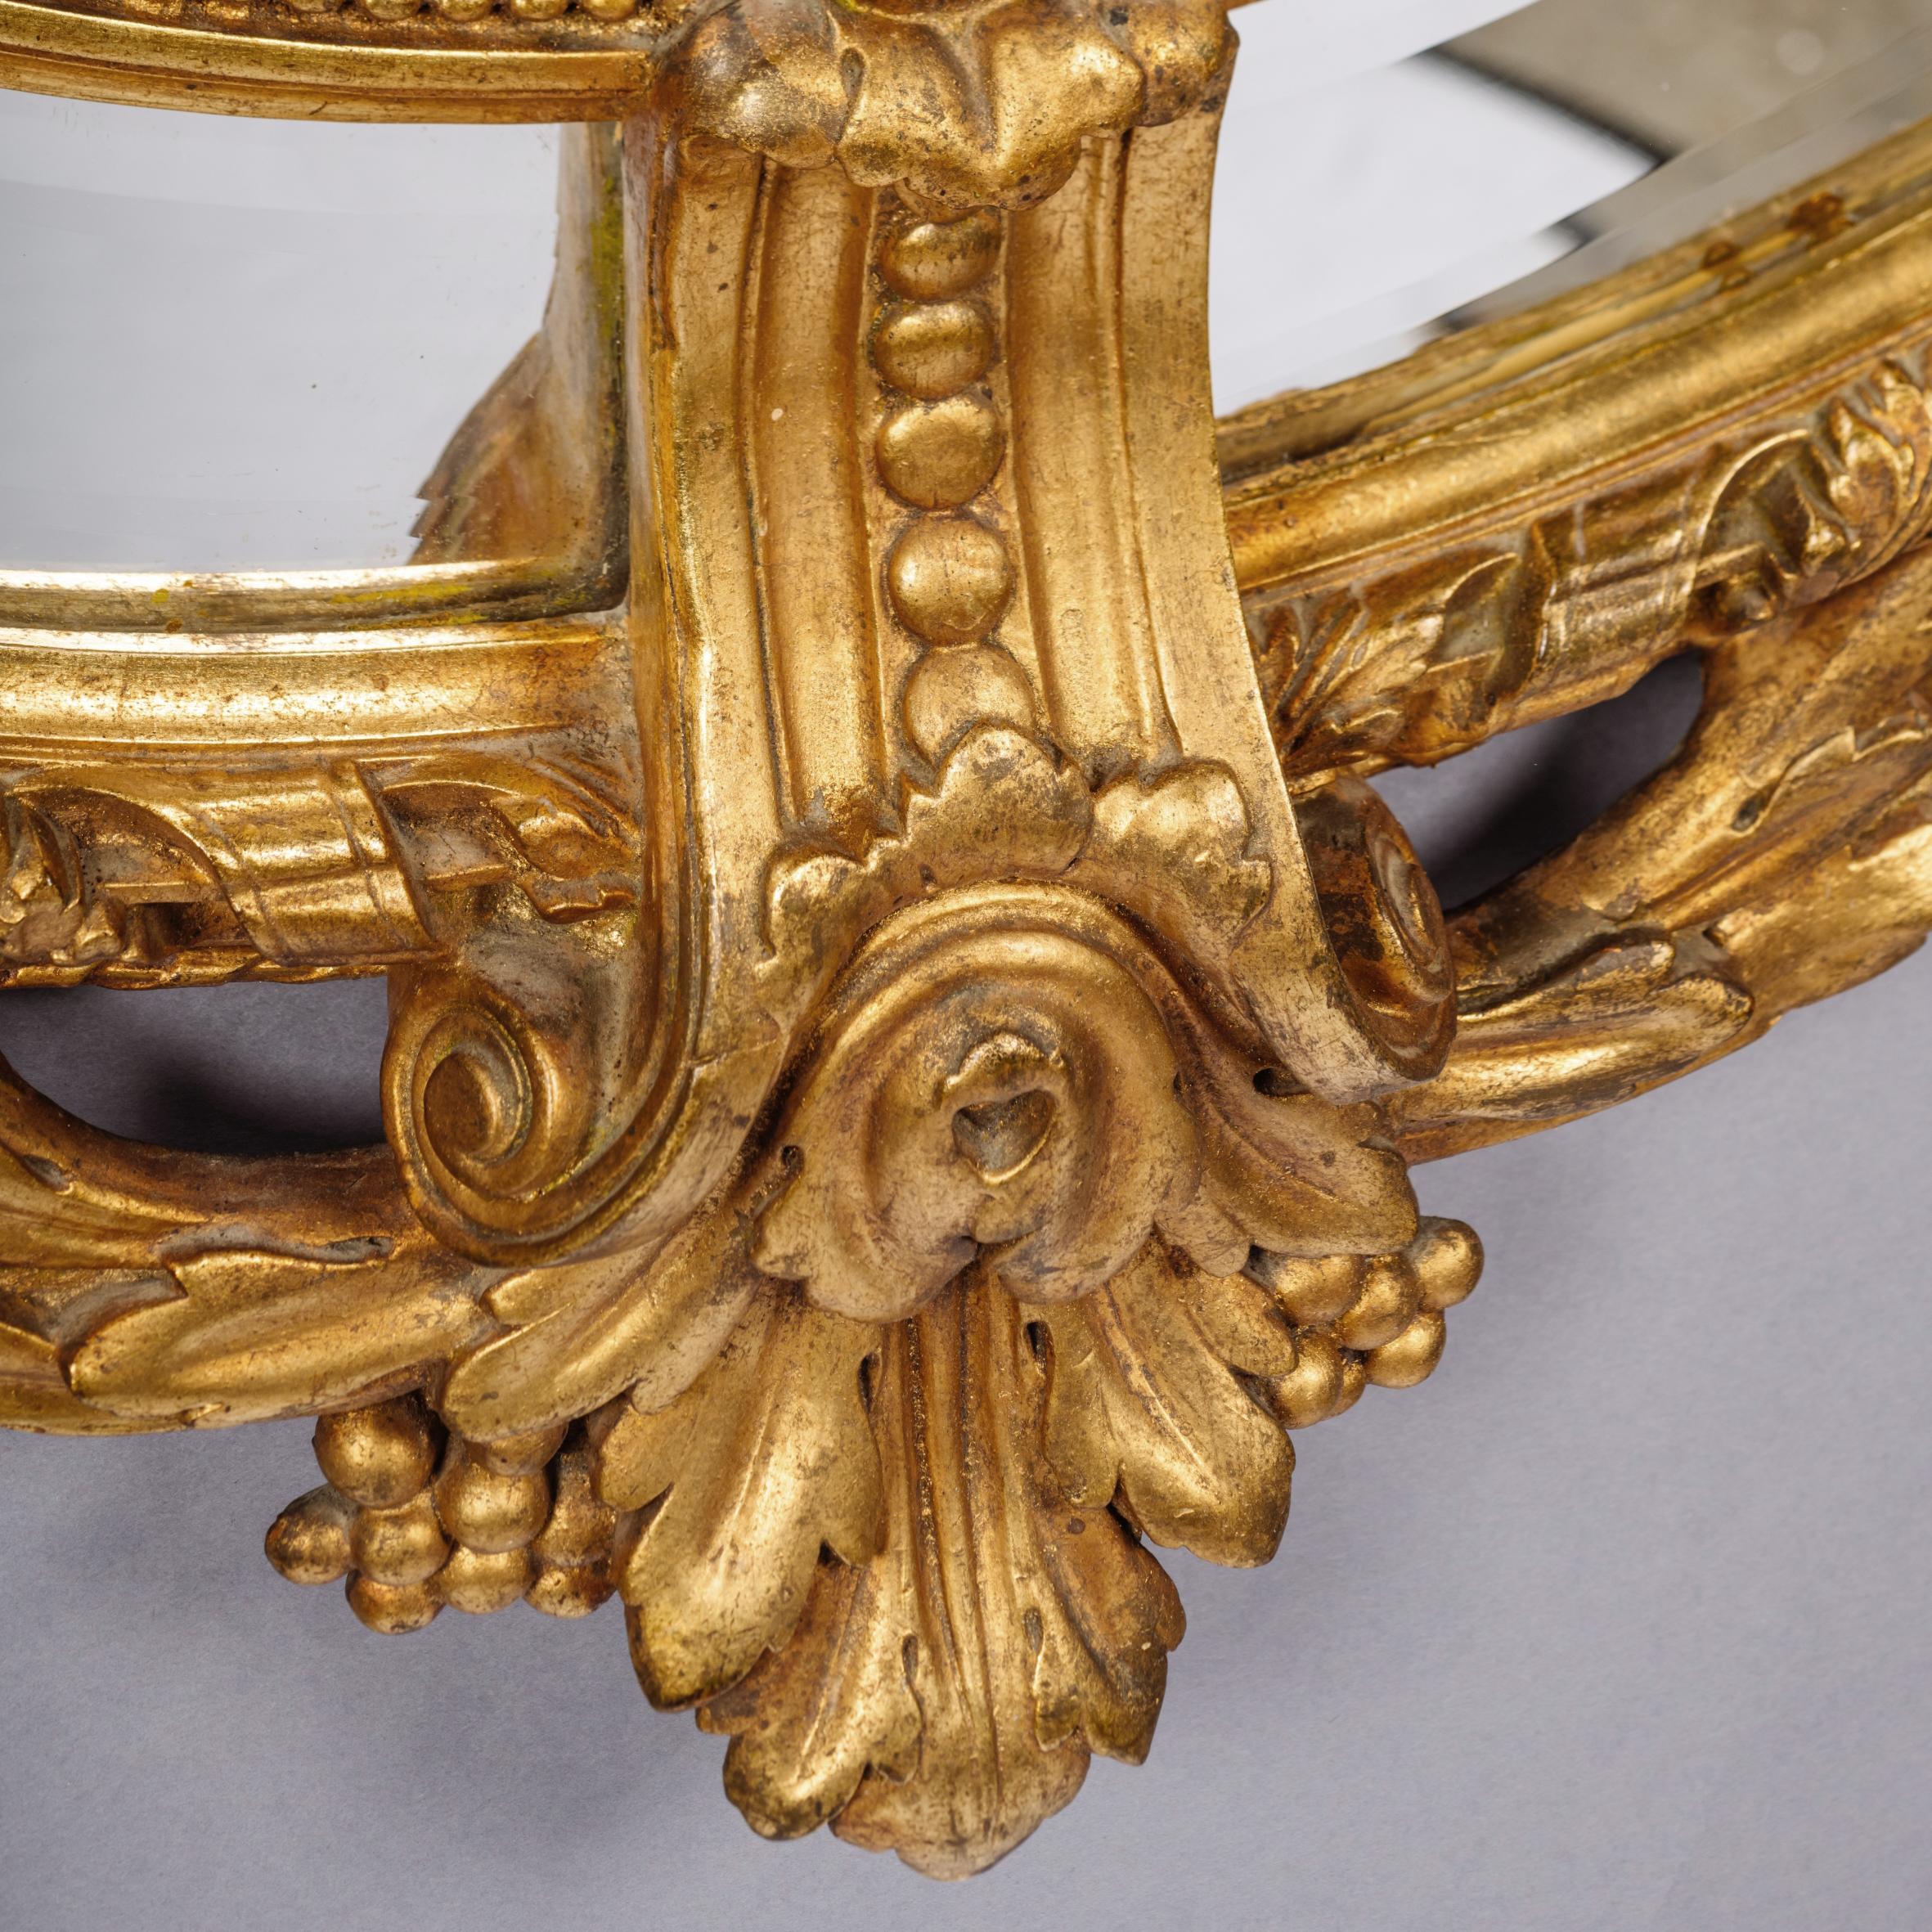 Ein feiner Napoleon III geschnitzt vergoldetes Holz oval Marginal Frame Spiegel.

Dieser fein geschnitzte Spiegel aus vergoldetem Holz und Gesso hat eine ovale, abgeschrägte Spiegelplatte, Randeinfassungen und eine üppige Akanthus- und